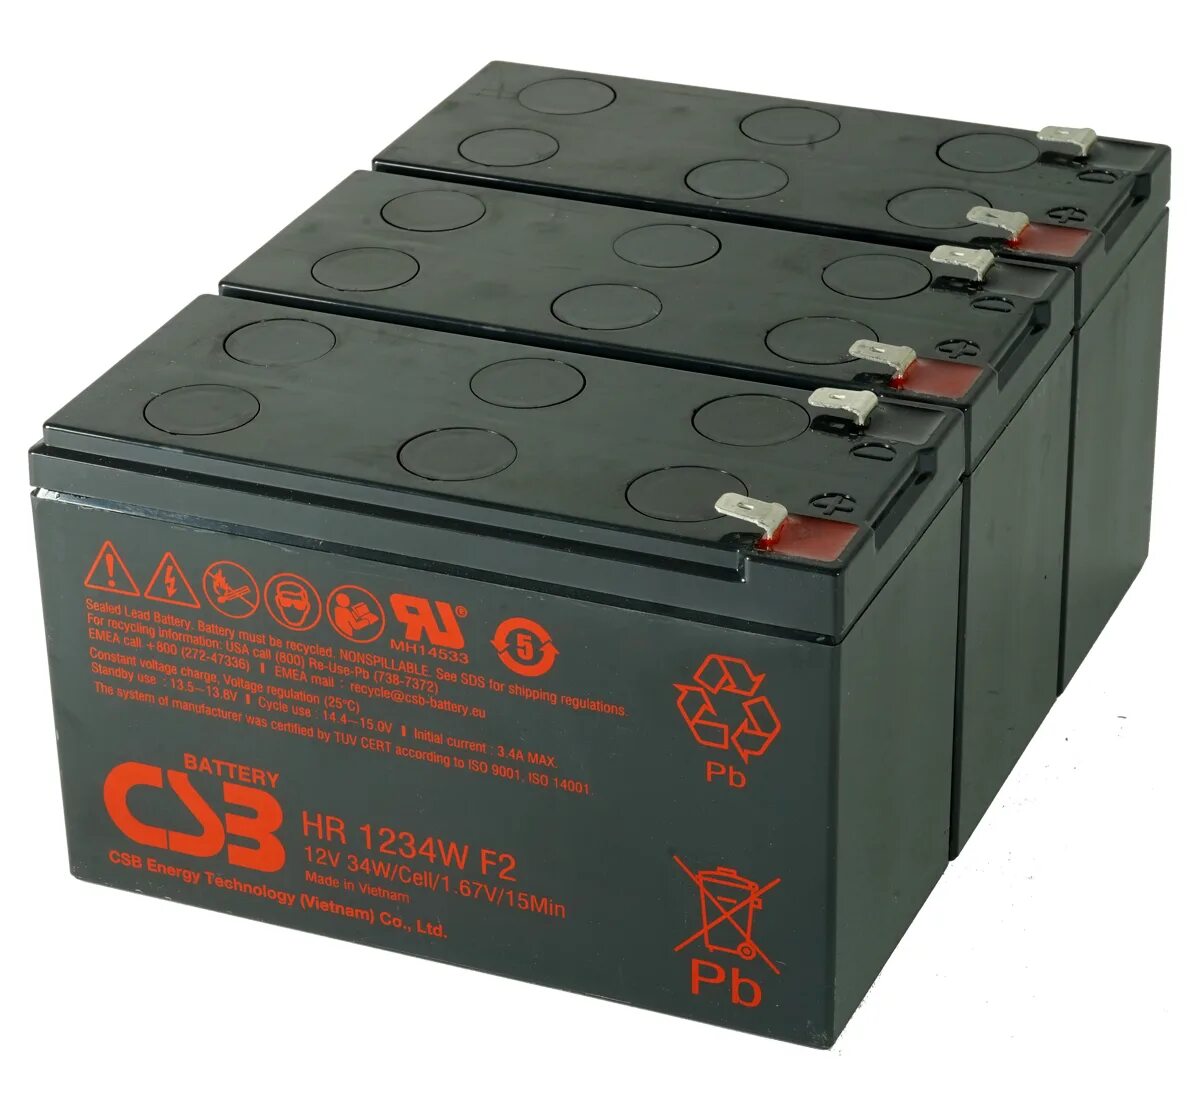 Csb battery. CSB hr1234w. HR 1234w f2. CSB GP 1272 f2. Wbr HR 1234w f2.